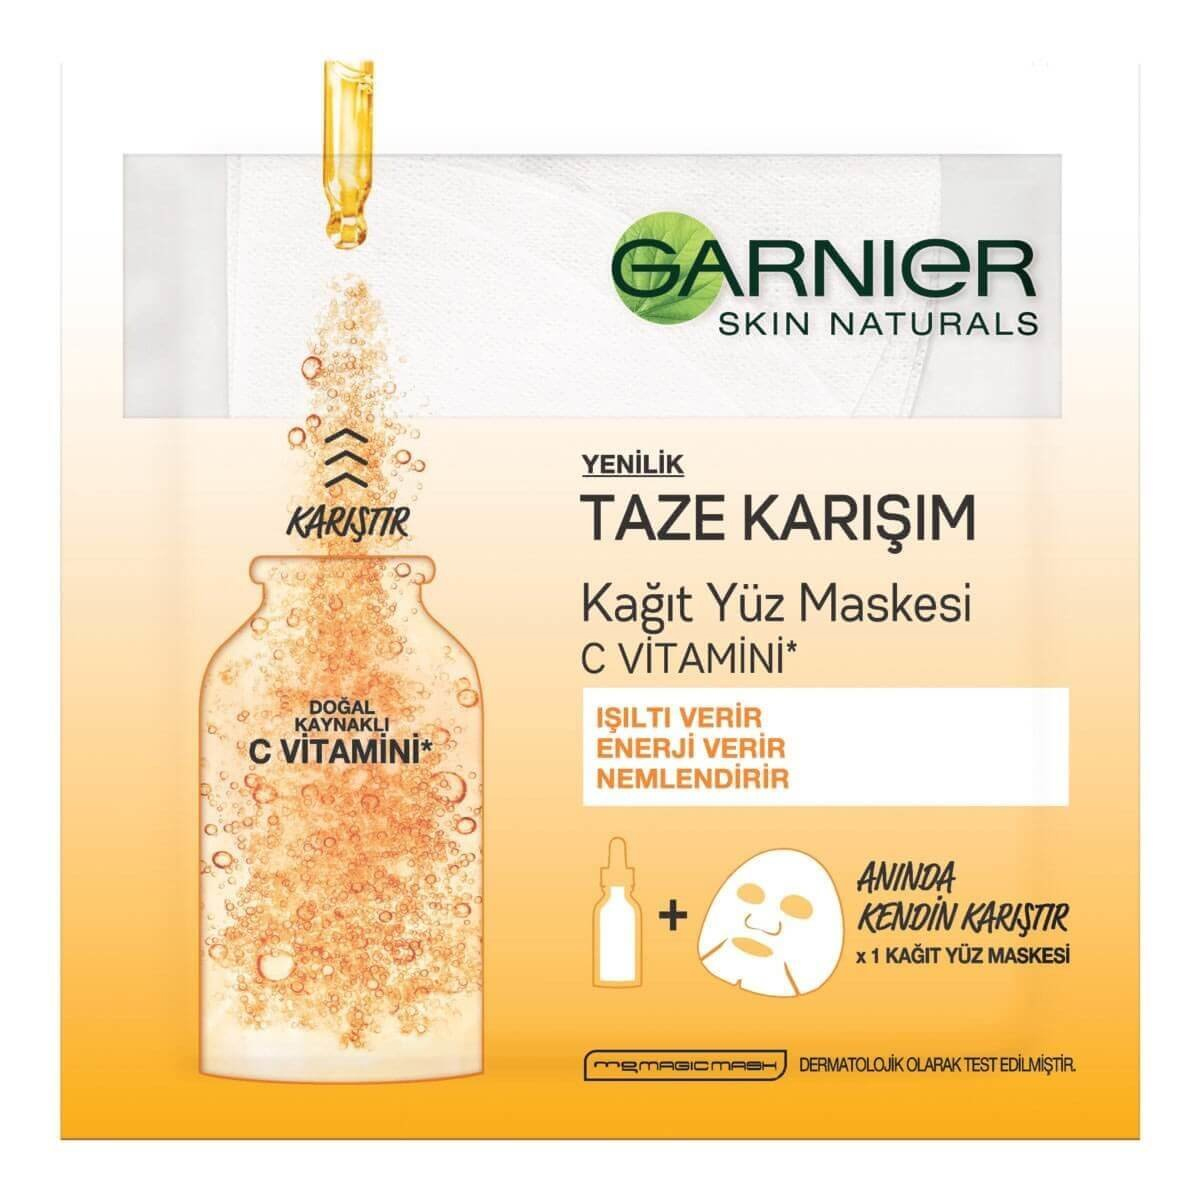 Garnier Taze Karışım C Vitaminli Tek Kullanımlık Kağıt Yüz Maskesi